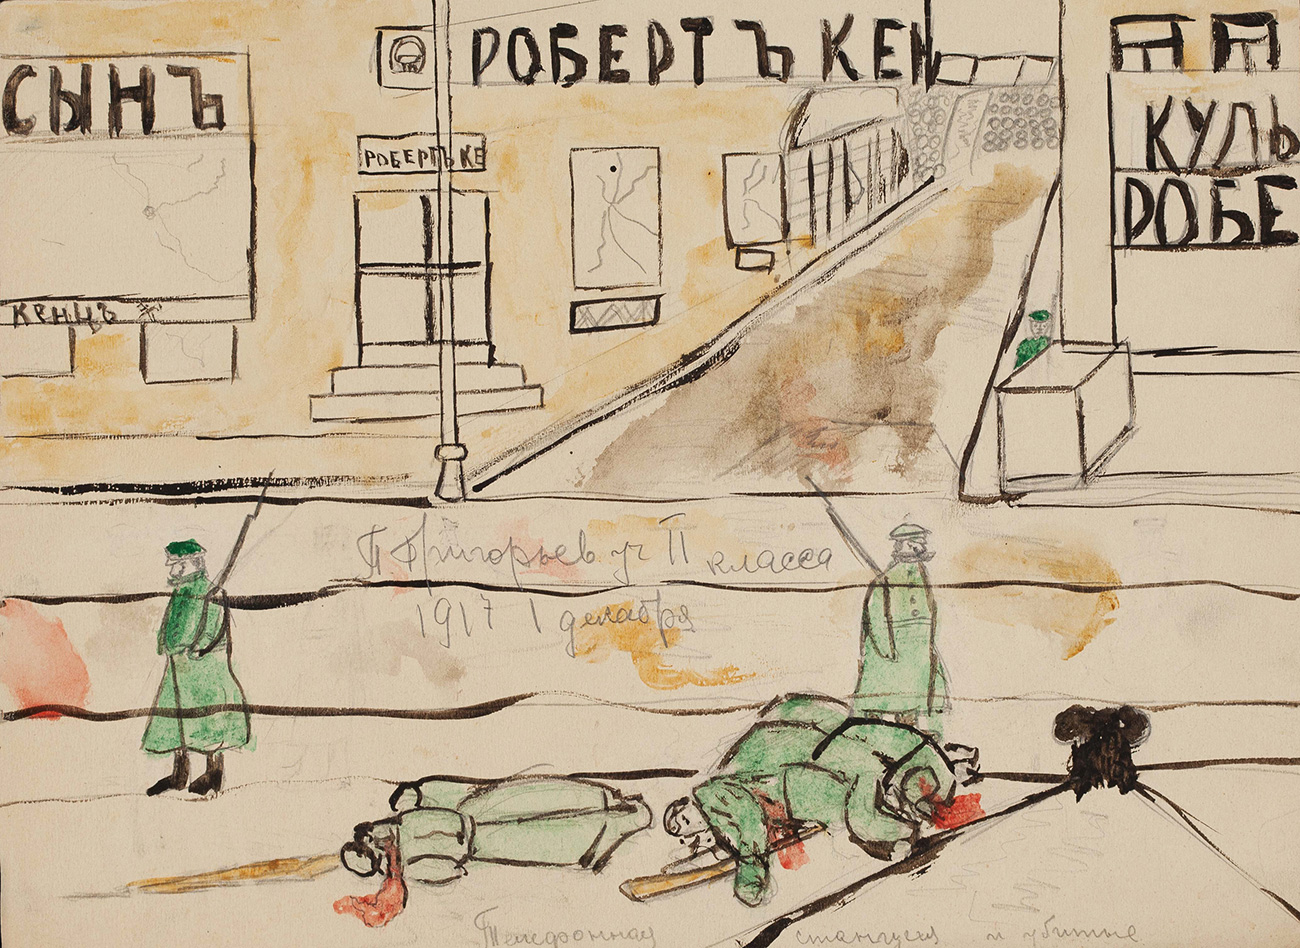 Kako bi obilježio stogodišnjicu revolucije, muzej je organizirao izložbu ovih djela pod nazivom "Dječji crtež Velike ruske revolucije", koja traje do 19. lipnja. "Telefonska stanica i ubijeni ljudi", Moskva, prosinac 1917.